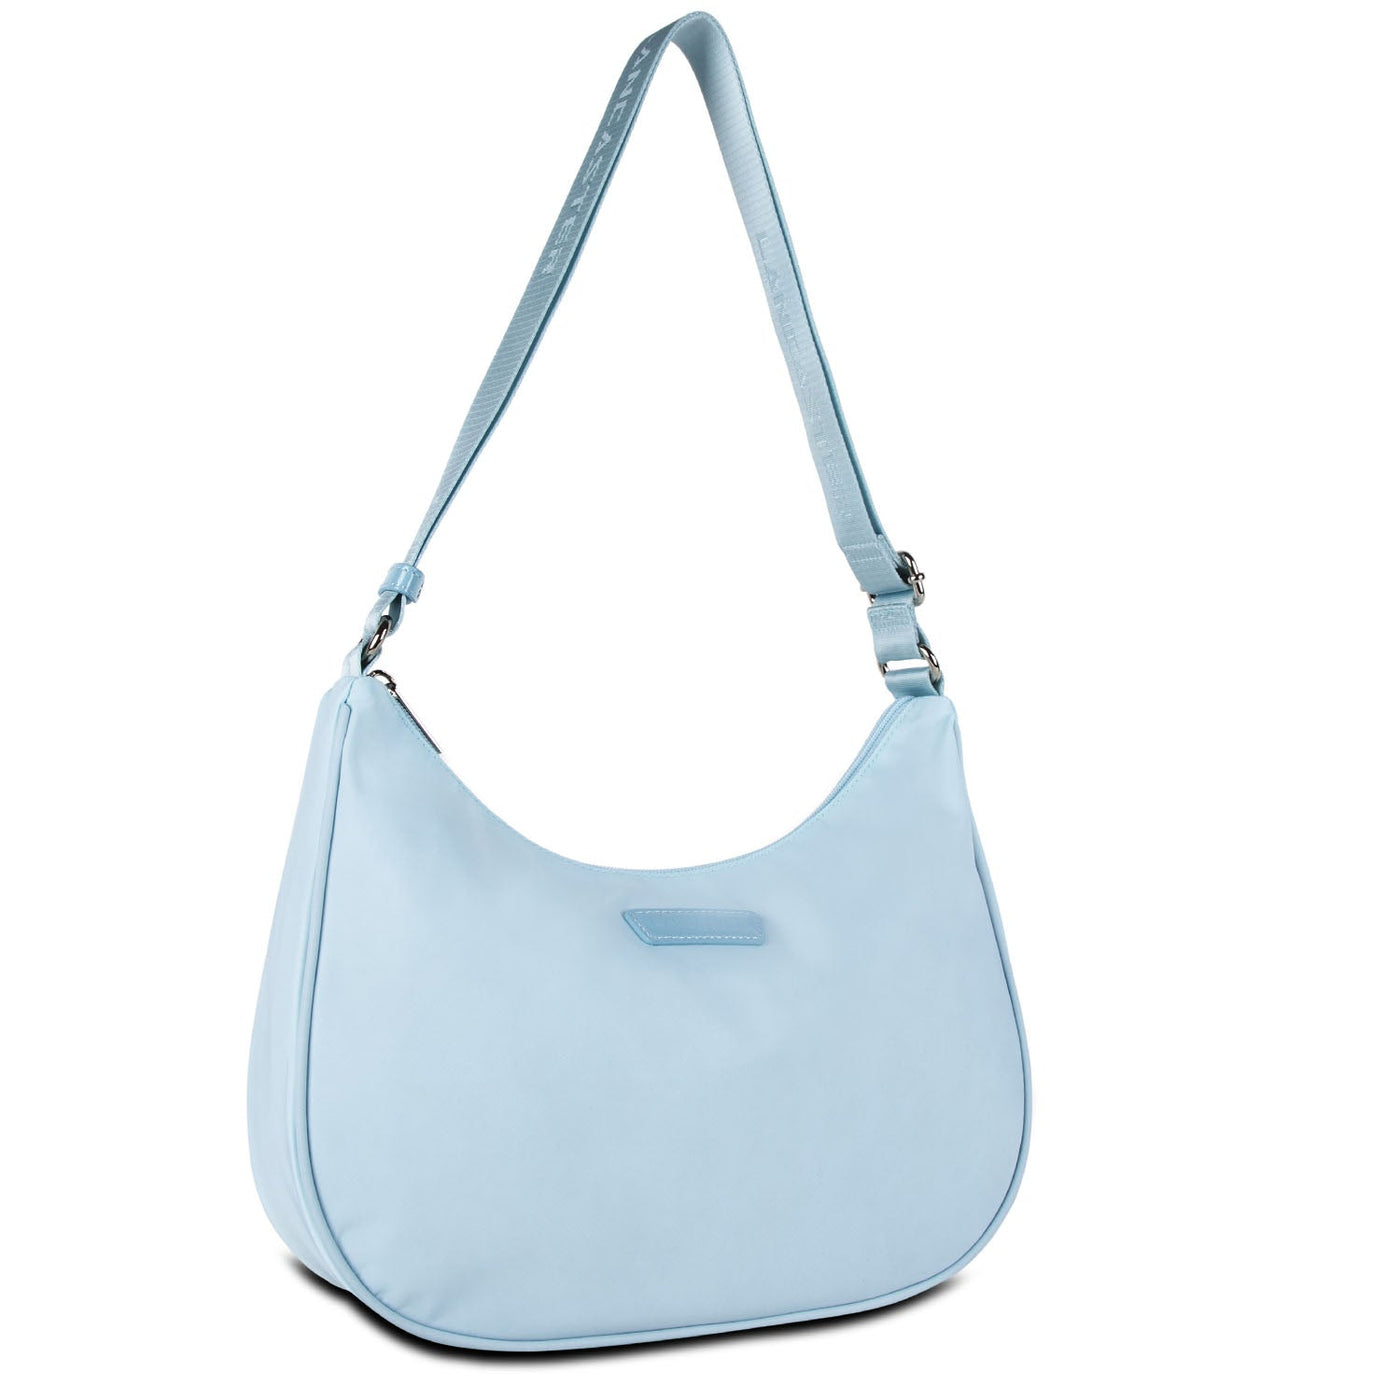 shoulder bag - basic verni #couleur_bleu-ciel